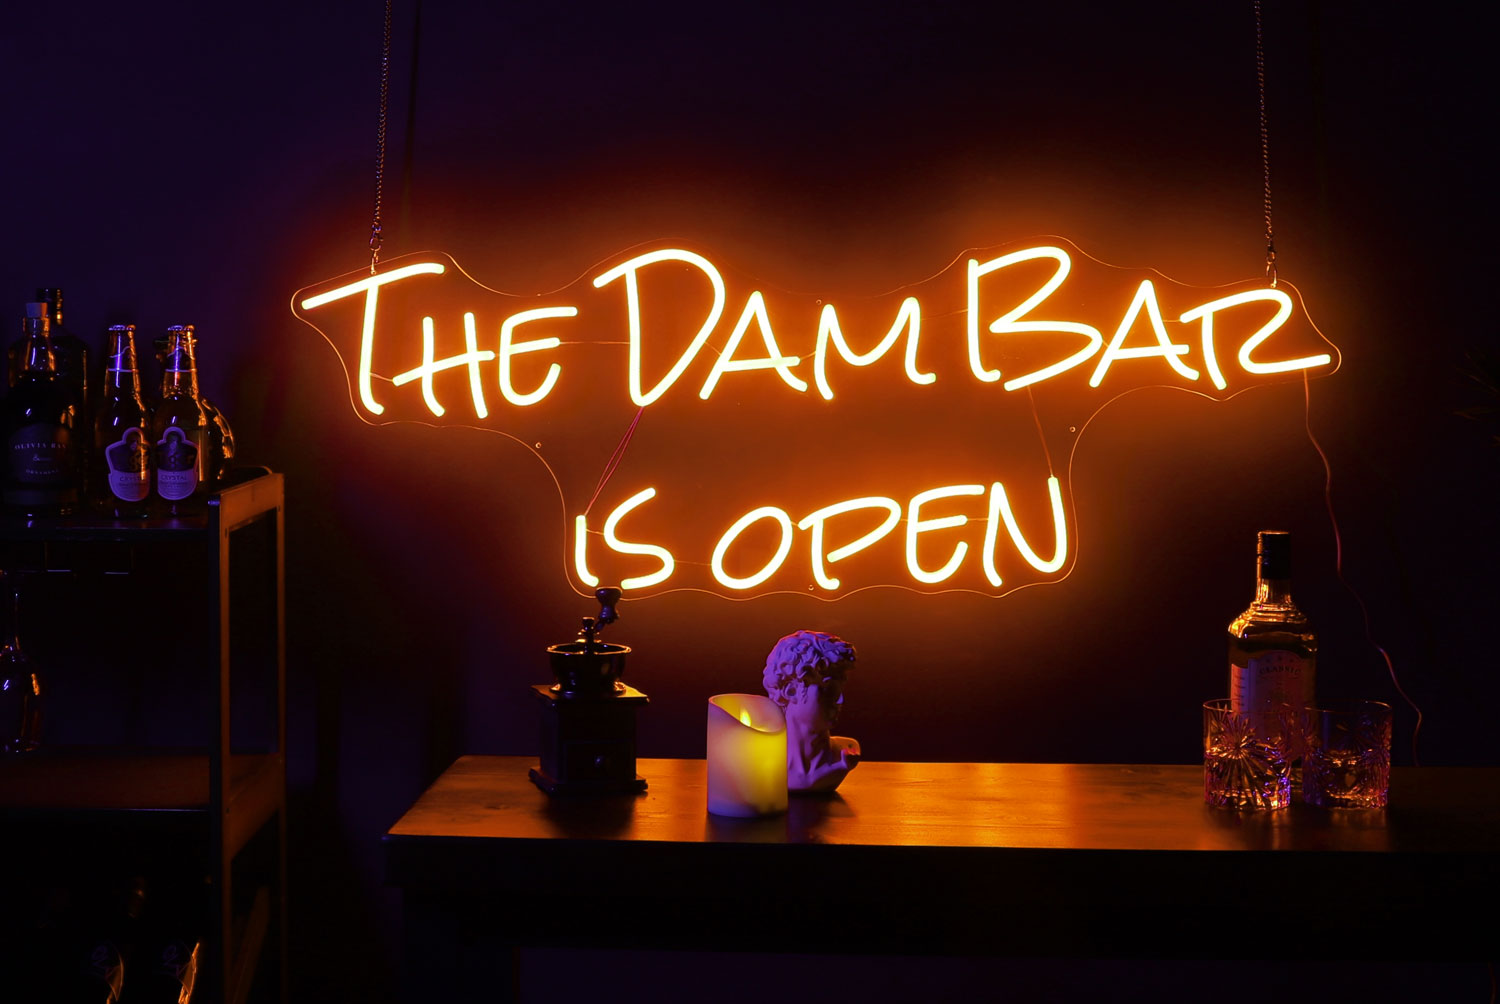 The bar is open Neon Sign in orange